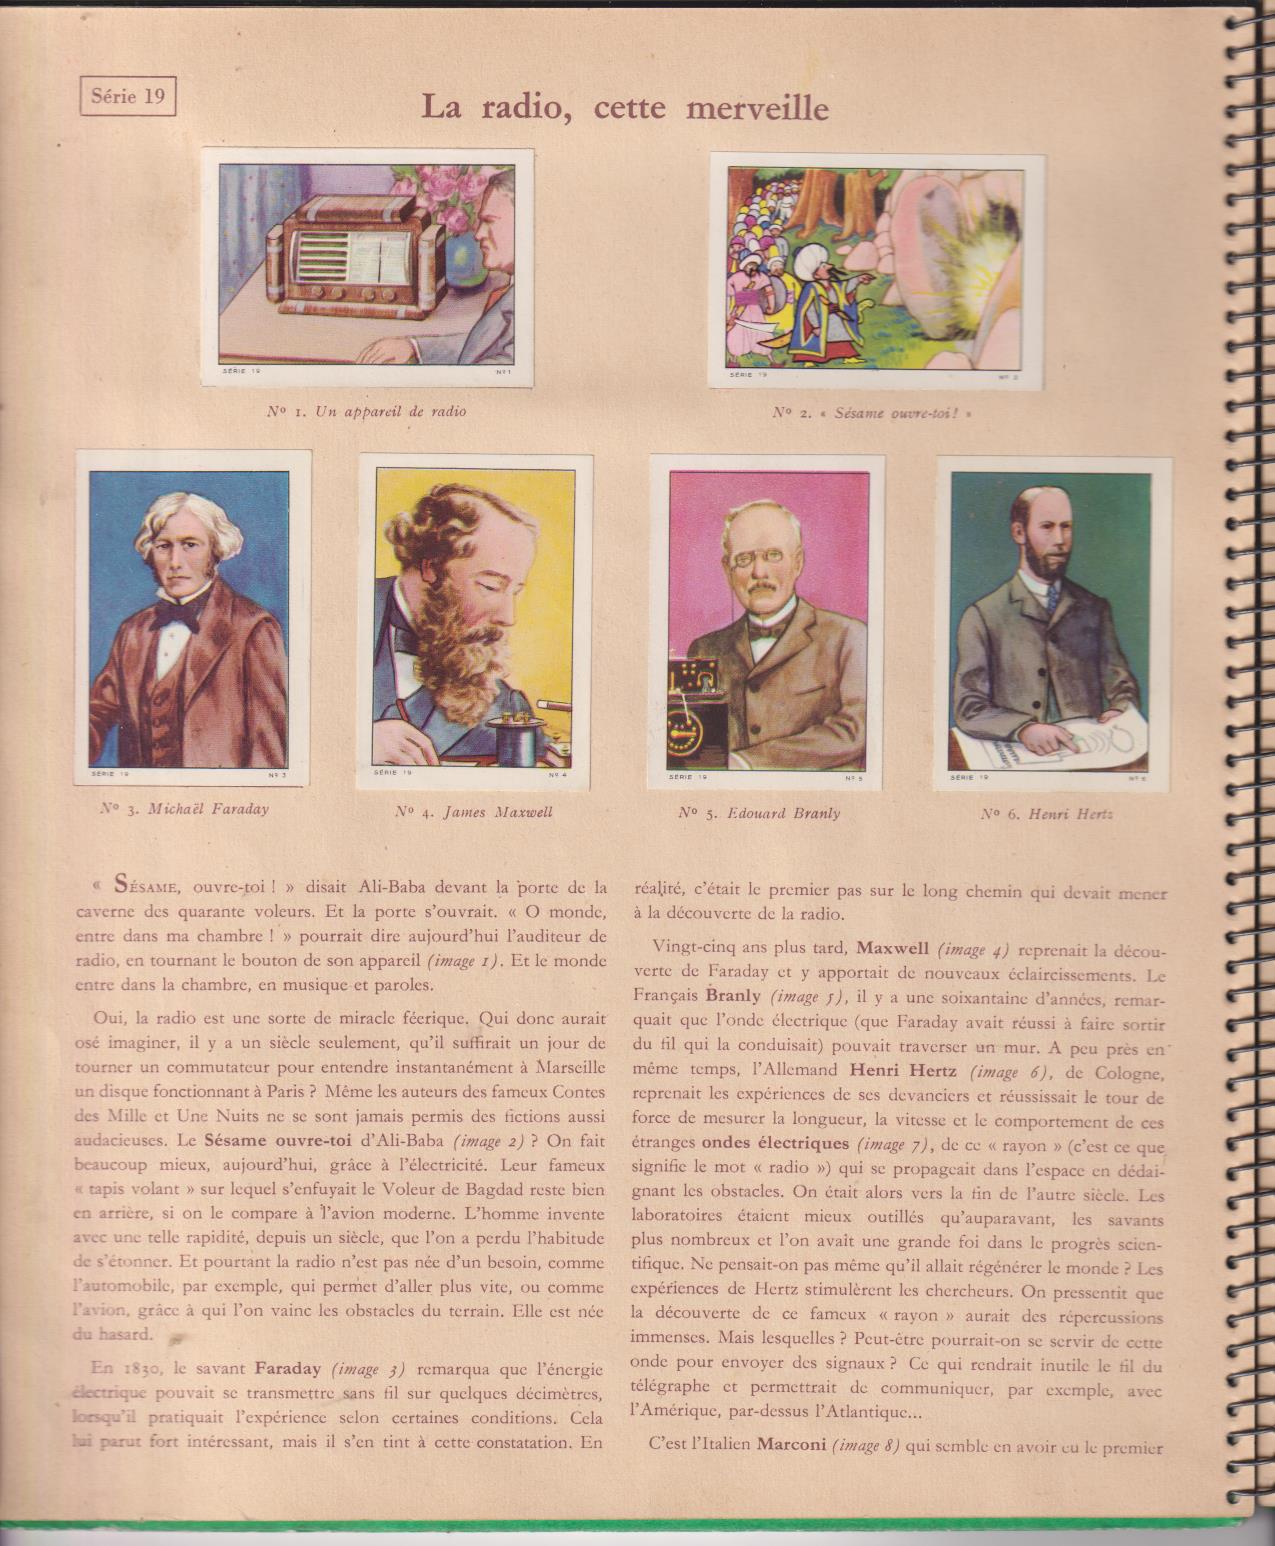 Les Merveilles du Monde. Volume 2. 1954-1955. Completo 216 cromos, Nestlé et Kohler